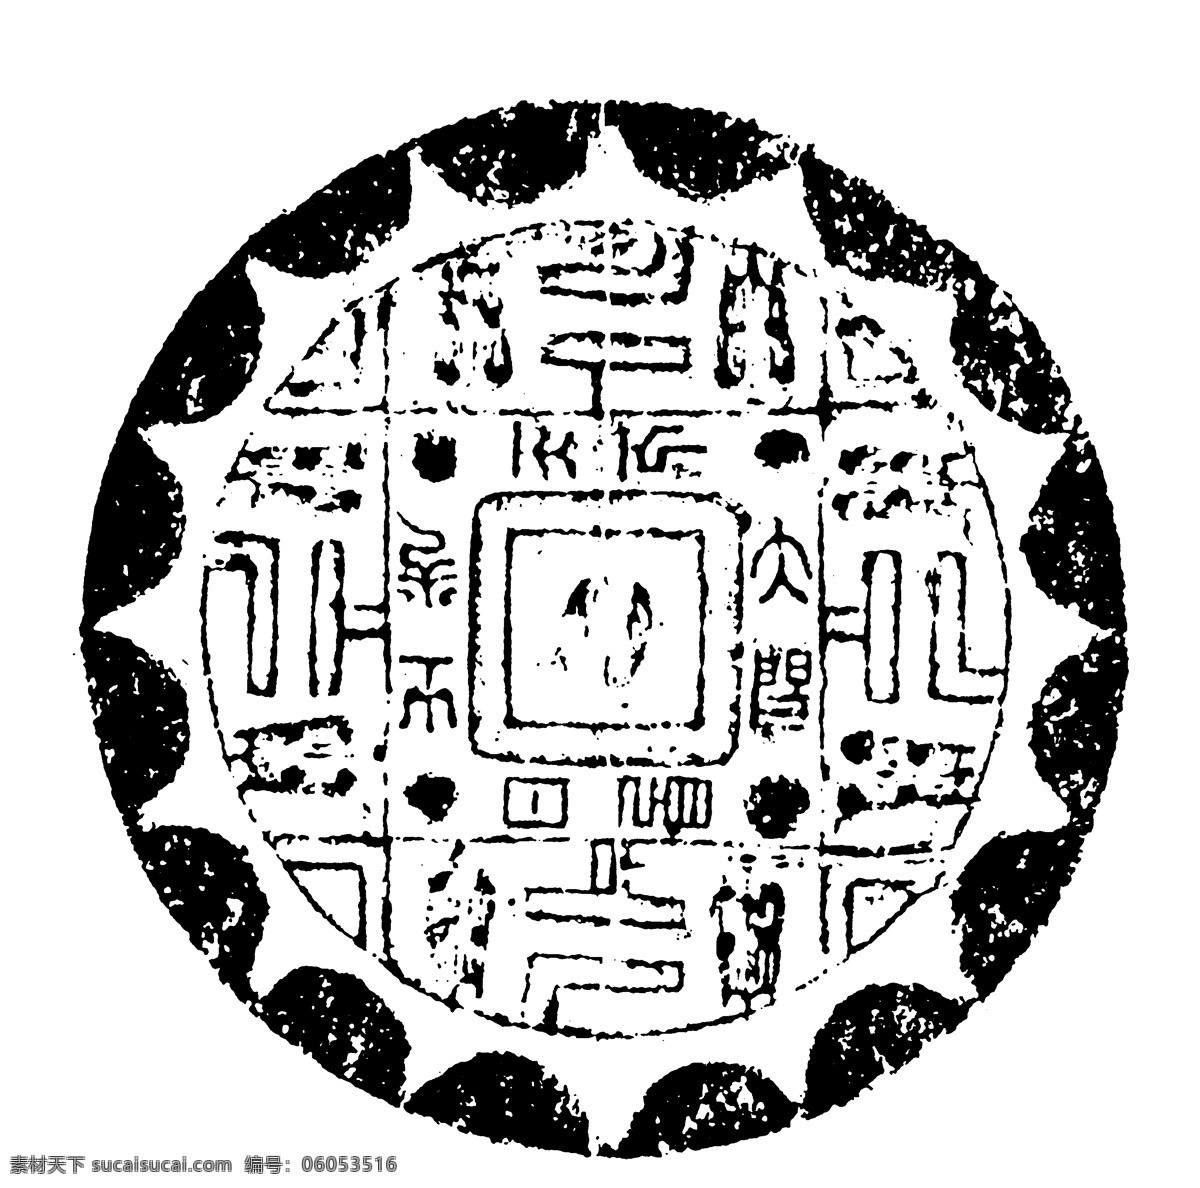 瓦当图案 秦汉时期图案 中国传统图案 图案037 图案 设计素材 瓦当纹饰 装饰图案 书画美术 白色